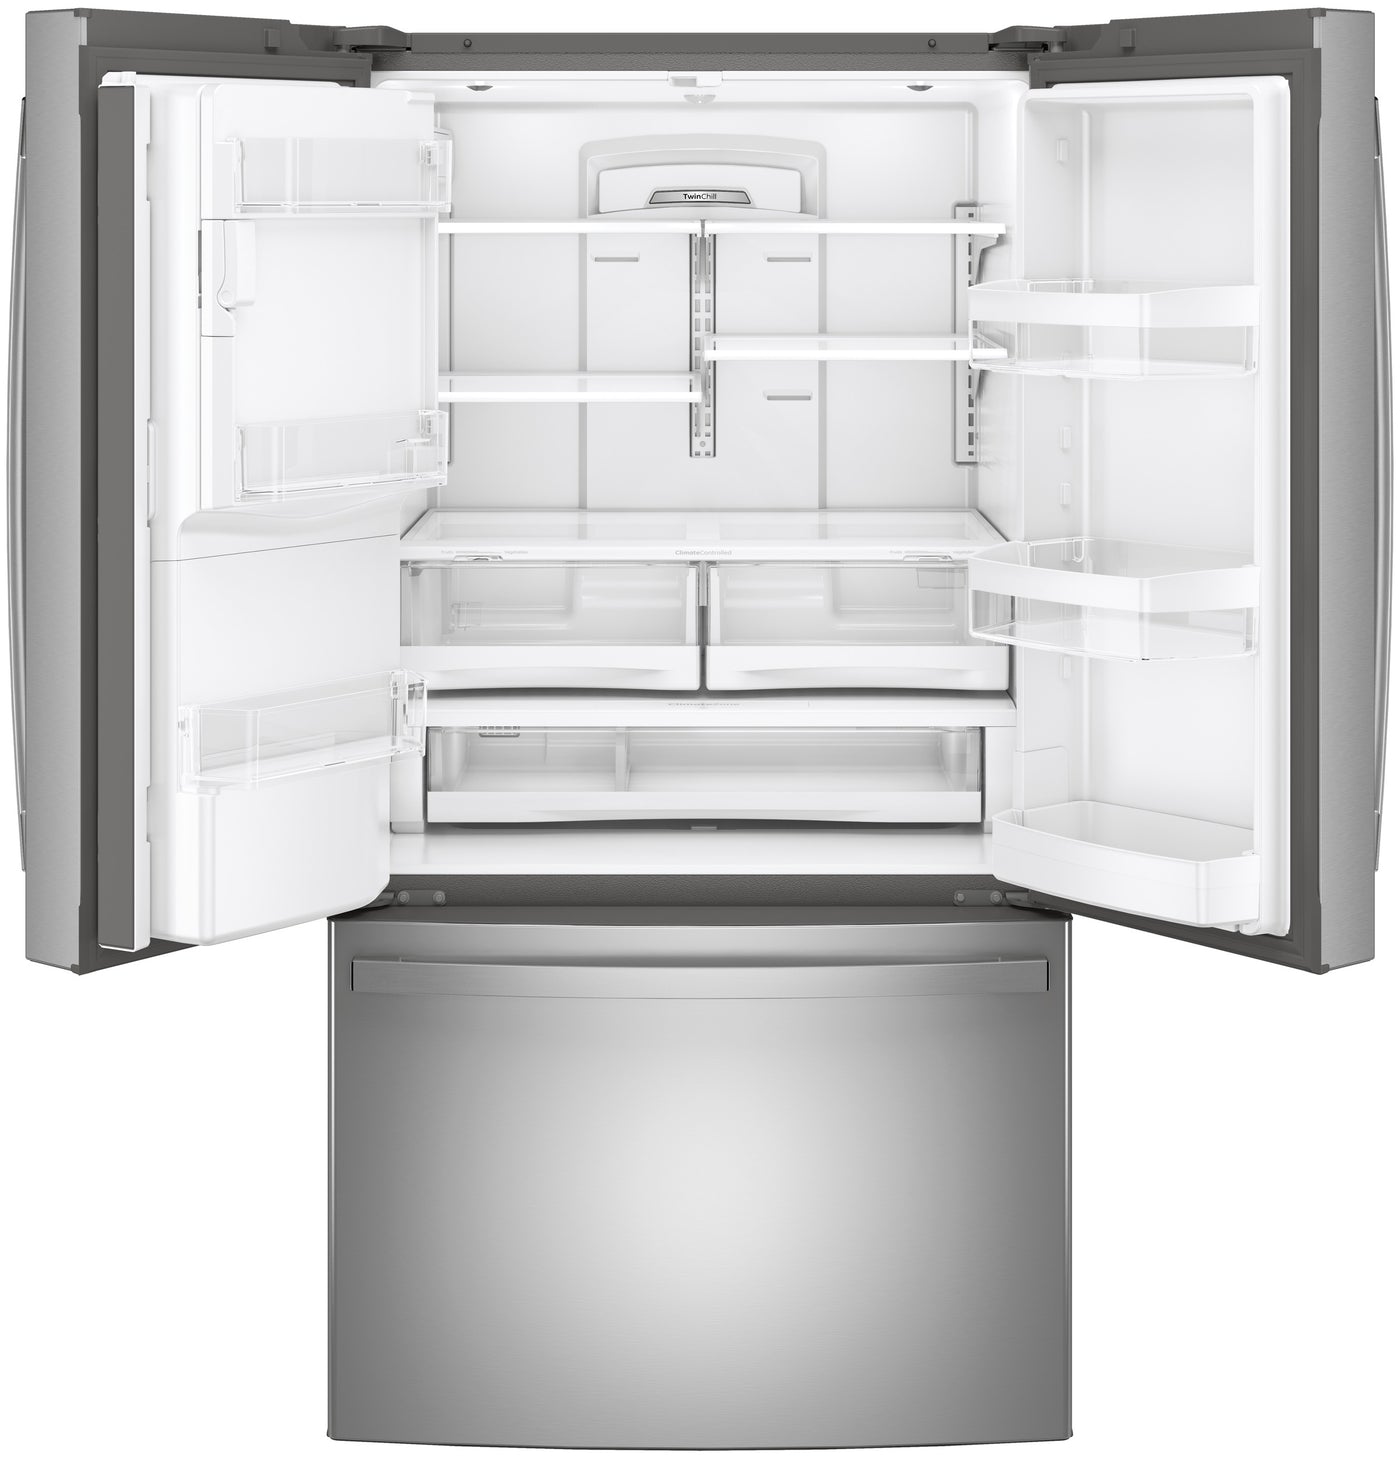 GE Appliances GFE28GYNFS Refrigerator/Freezer 27.7 Cu. Ft with 1-Year Warranty